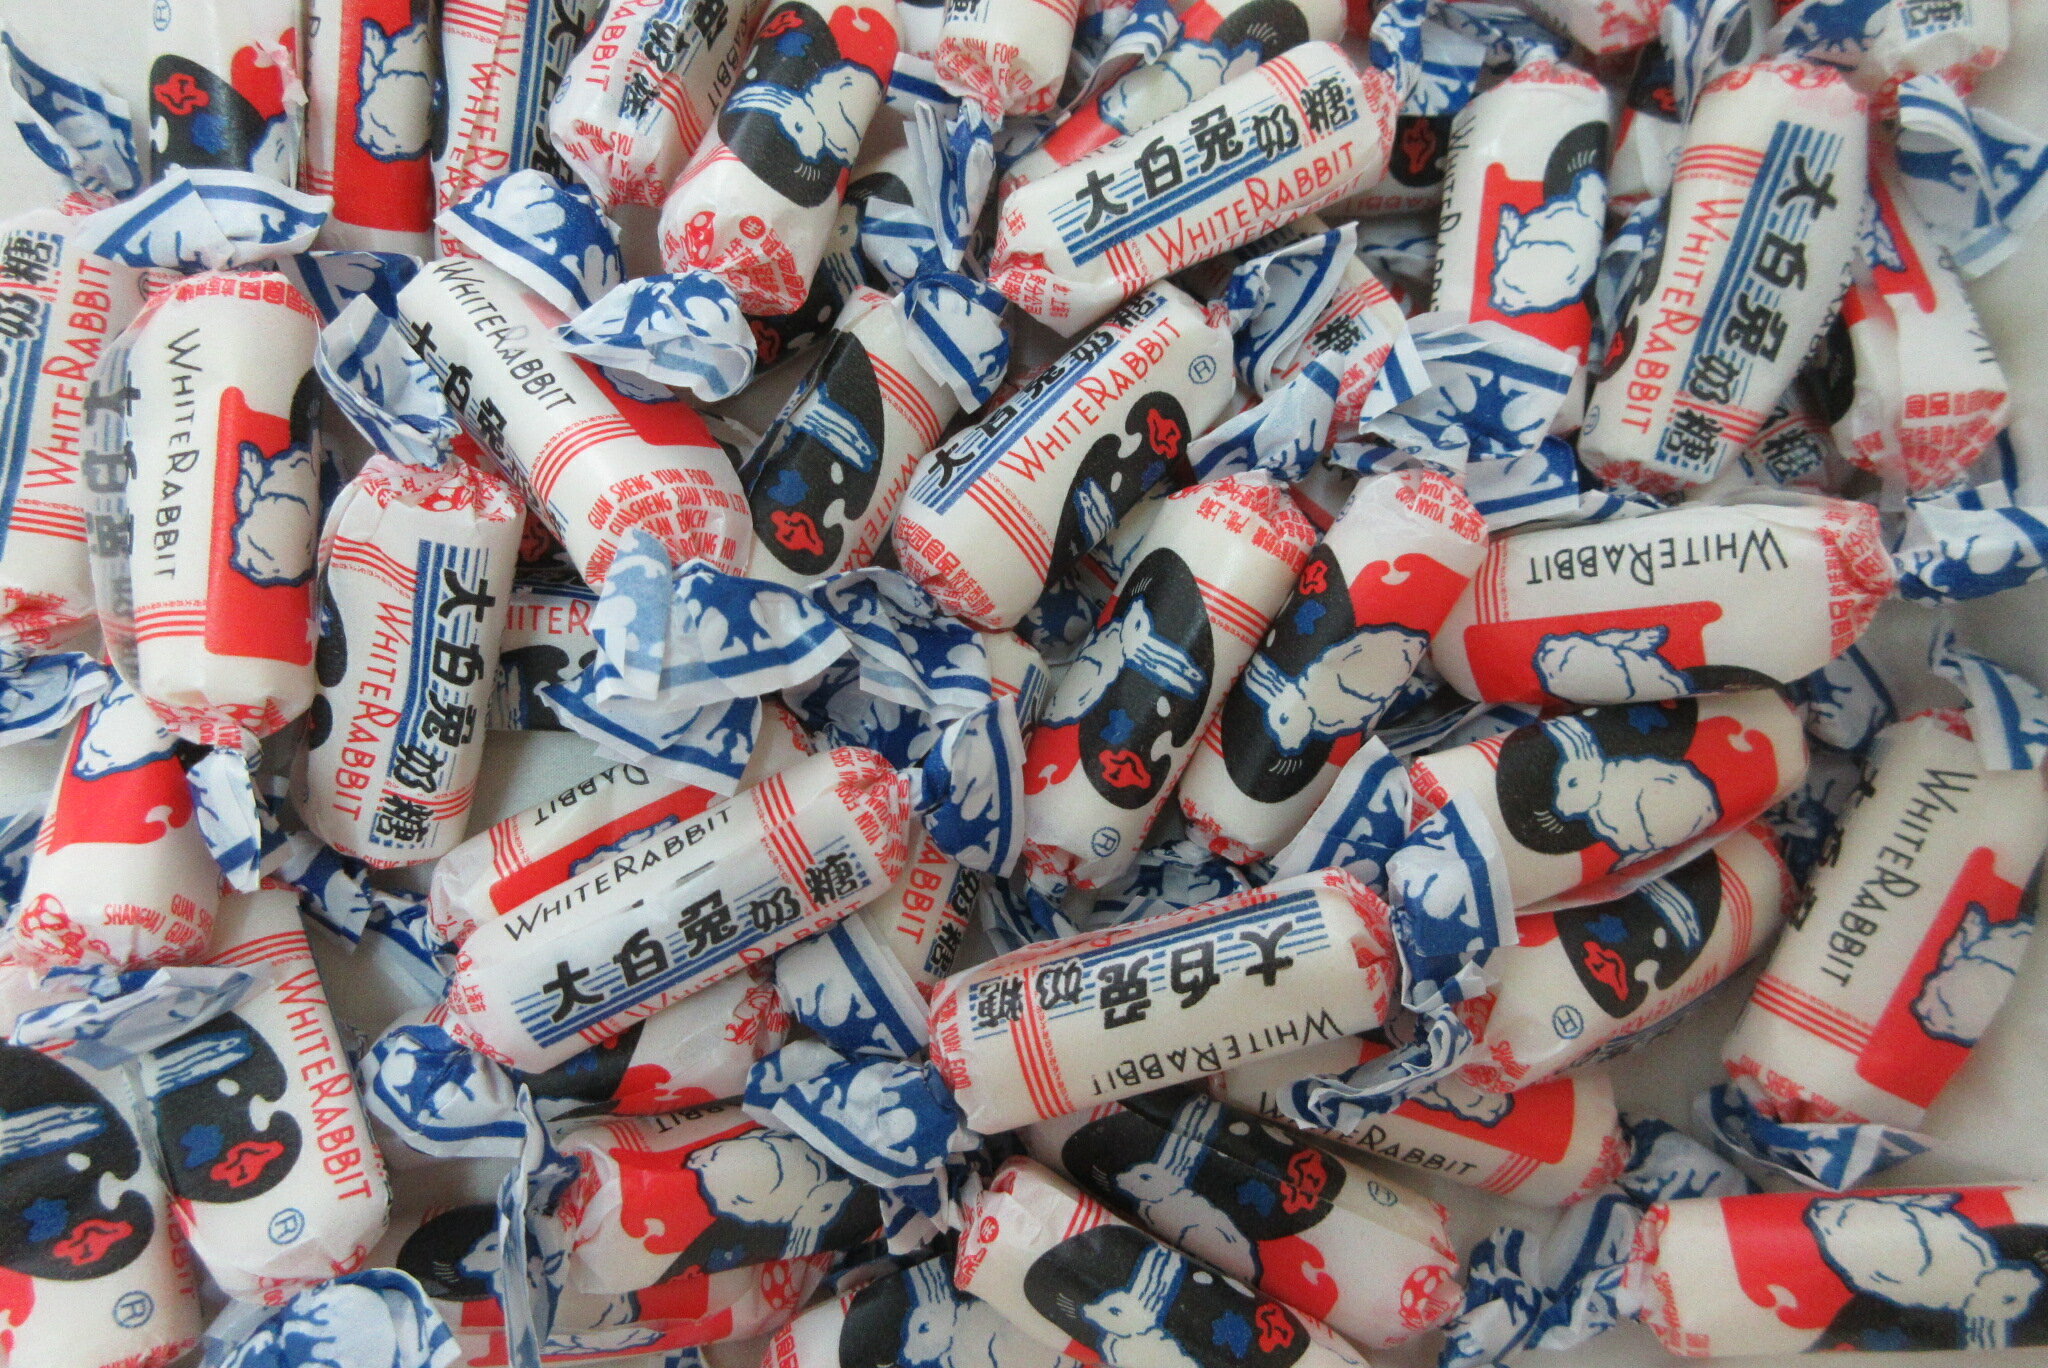 «Белый кролик» — популярные китайские молочные конфеты с тающей
карамелью, их точно оценят дети.